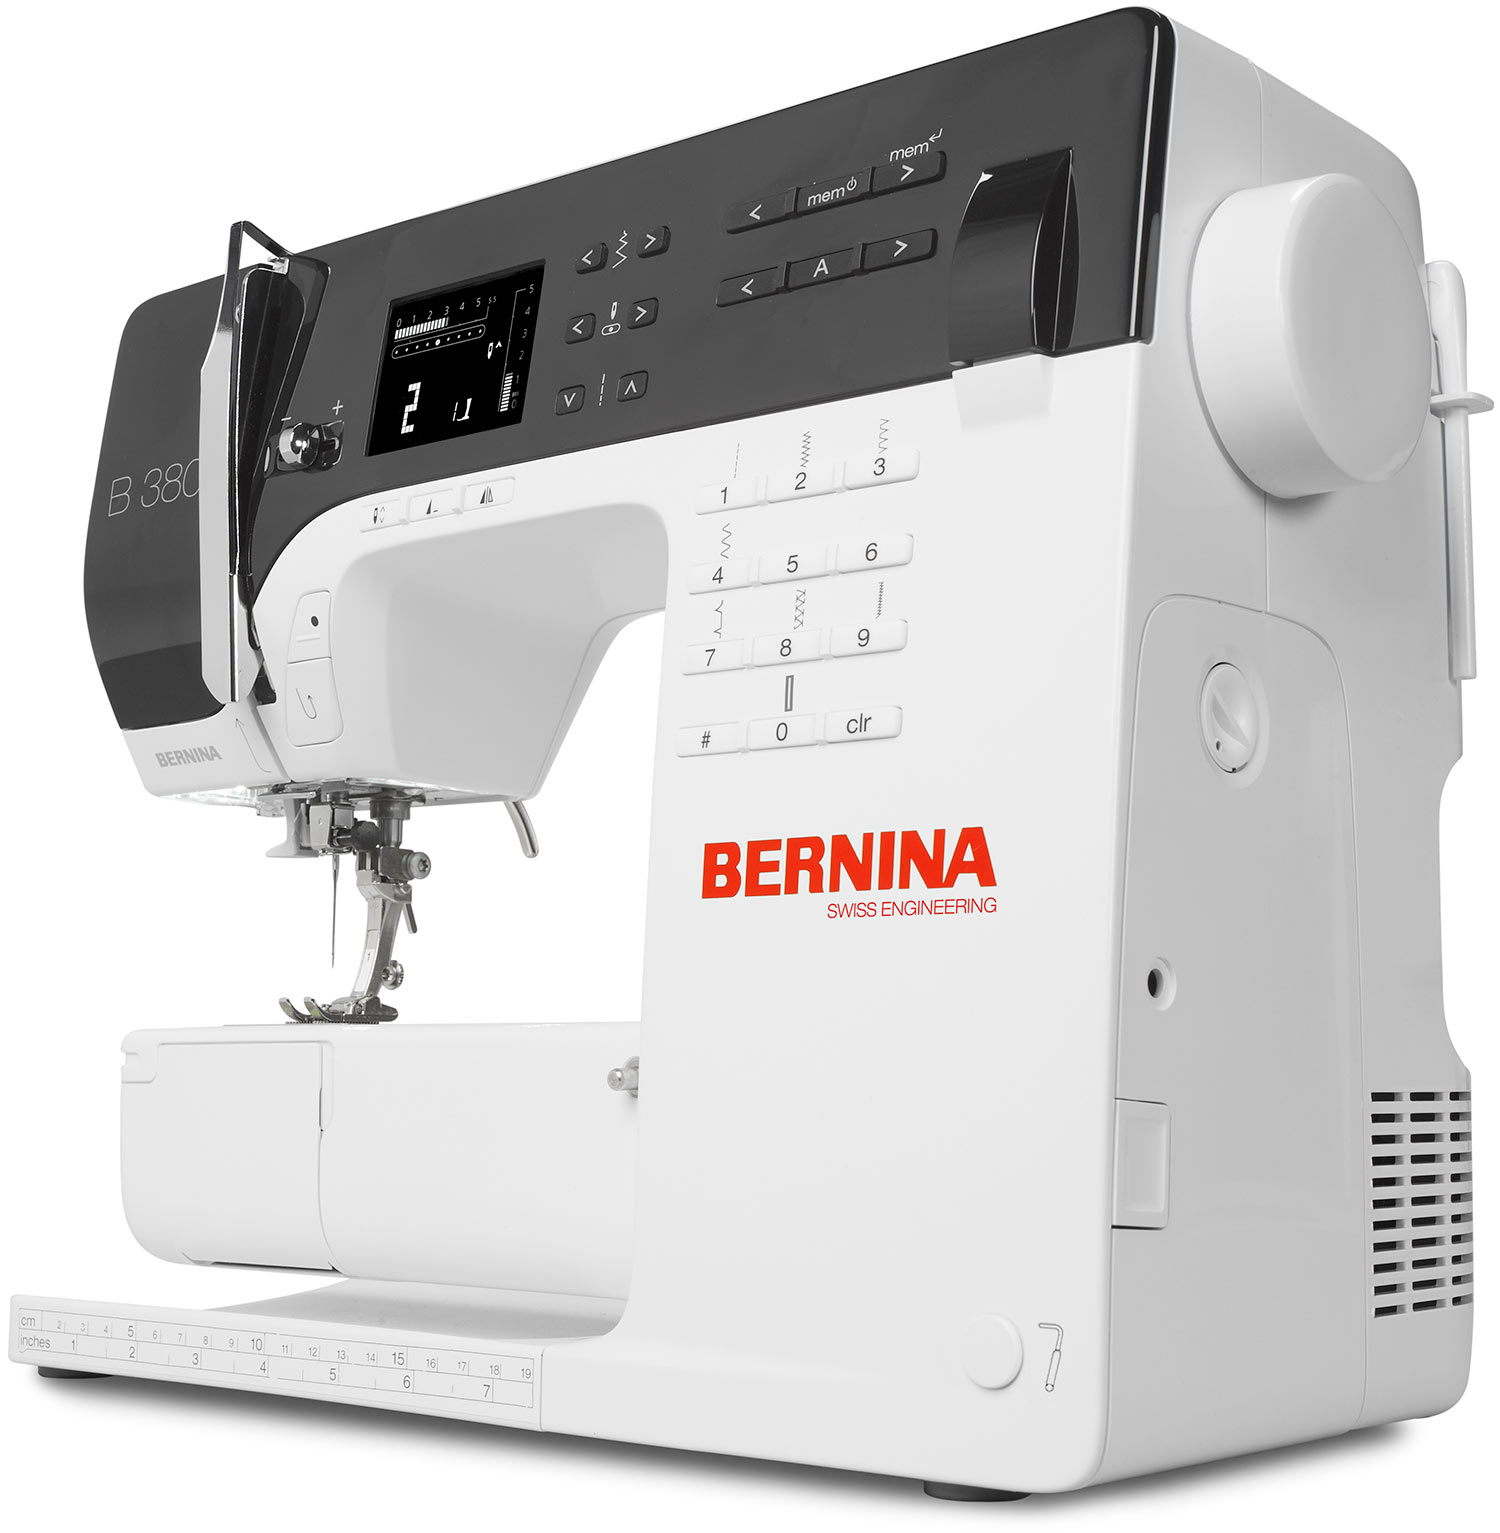 Машинки бернина купить. Швейная машинка Bernina b380. Швейная машина Bernina b 380. Бернина b540. Швейная машинка Bernina b380 цена.